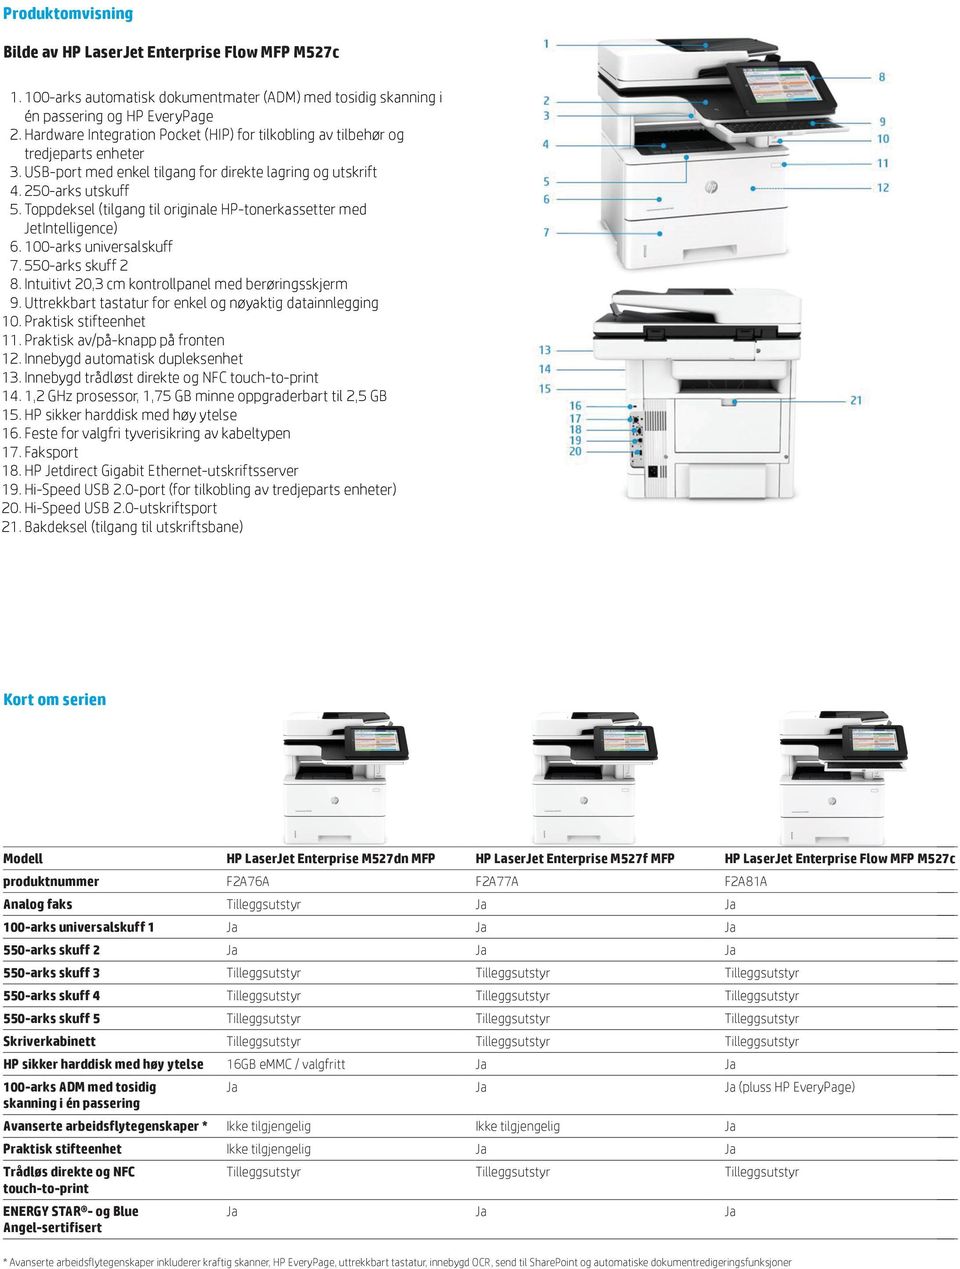 Toppdeksel (tilgang til originale HP-tonerkassetter med JetIntelligence) 6. 100-arks universalskuff 7. 550-arks skuff 2 8. Intuitivt 20,3 cm kontrollpanel med berøringsskjerm 9.